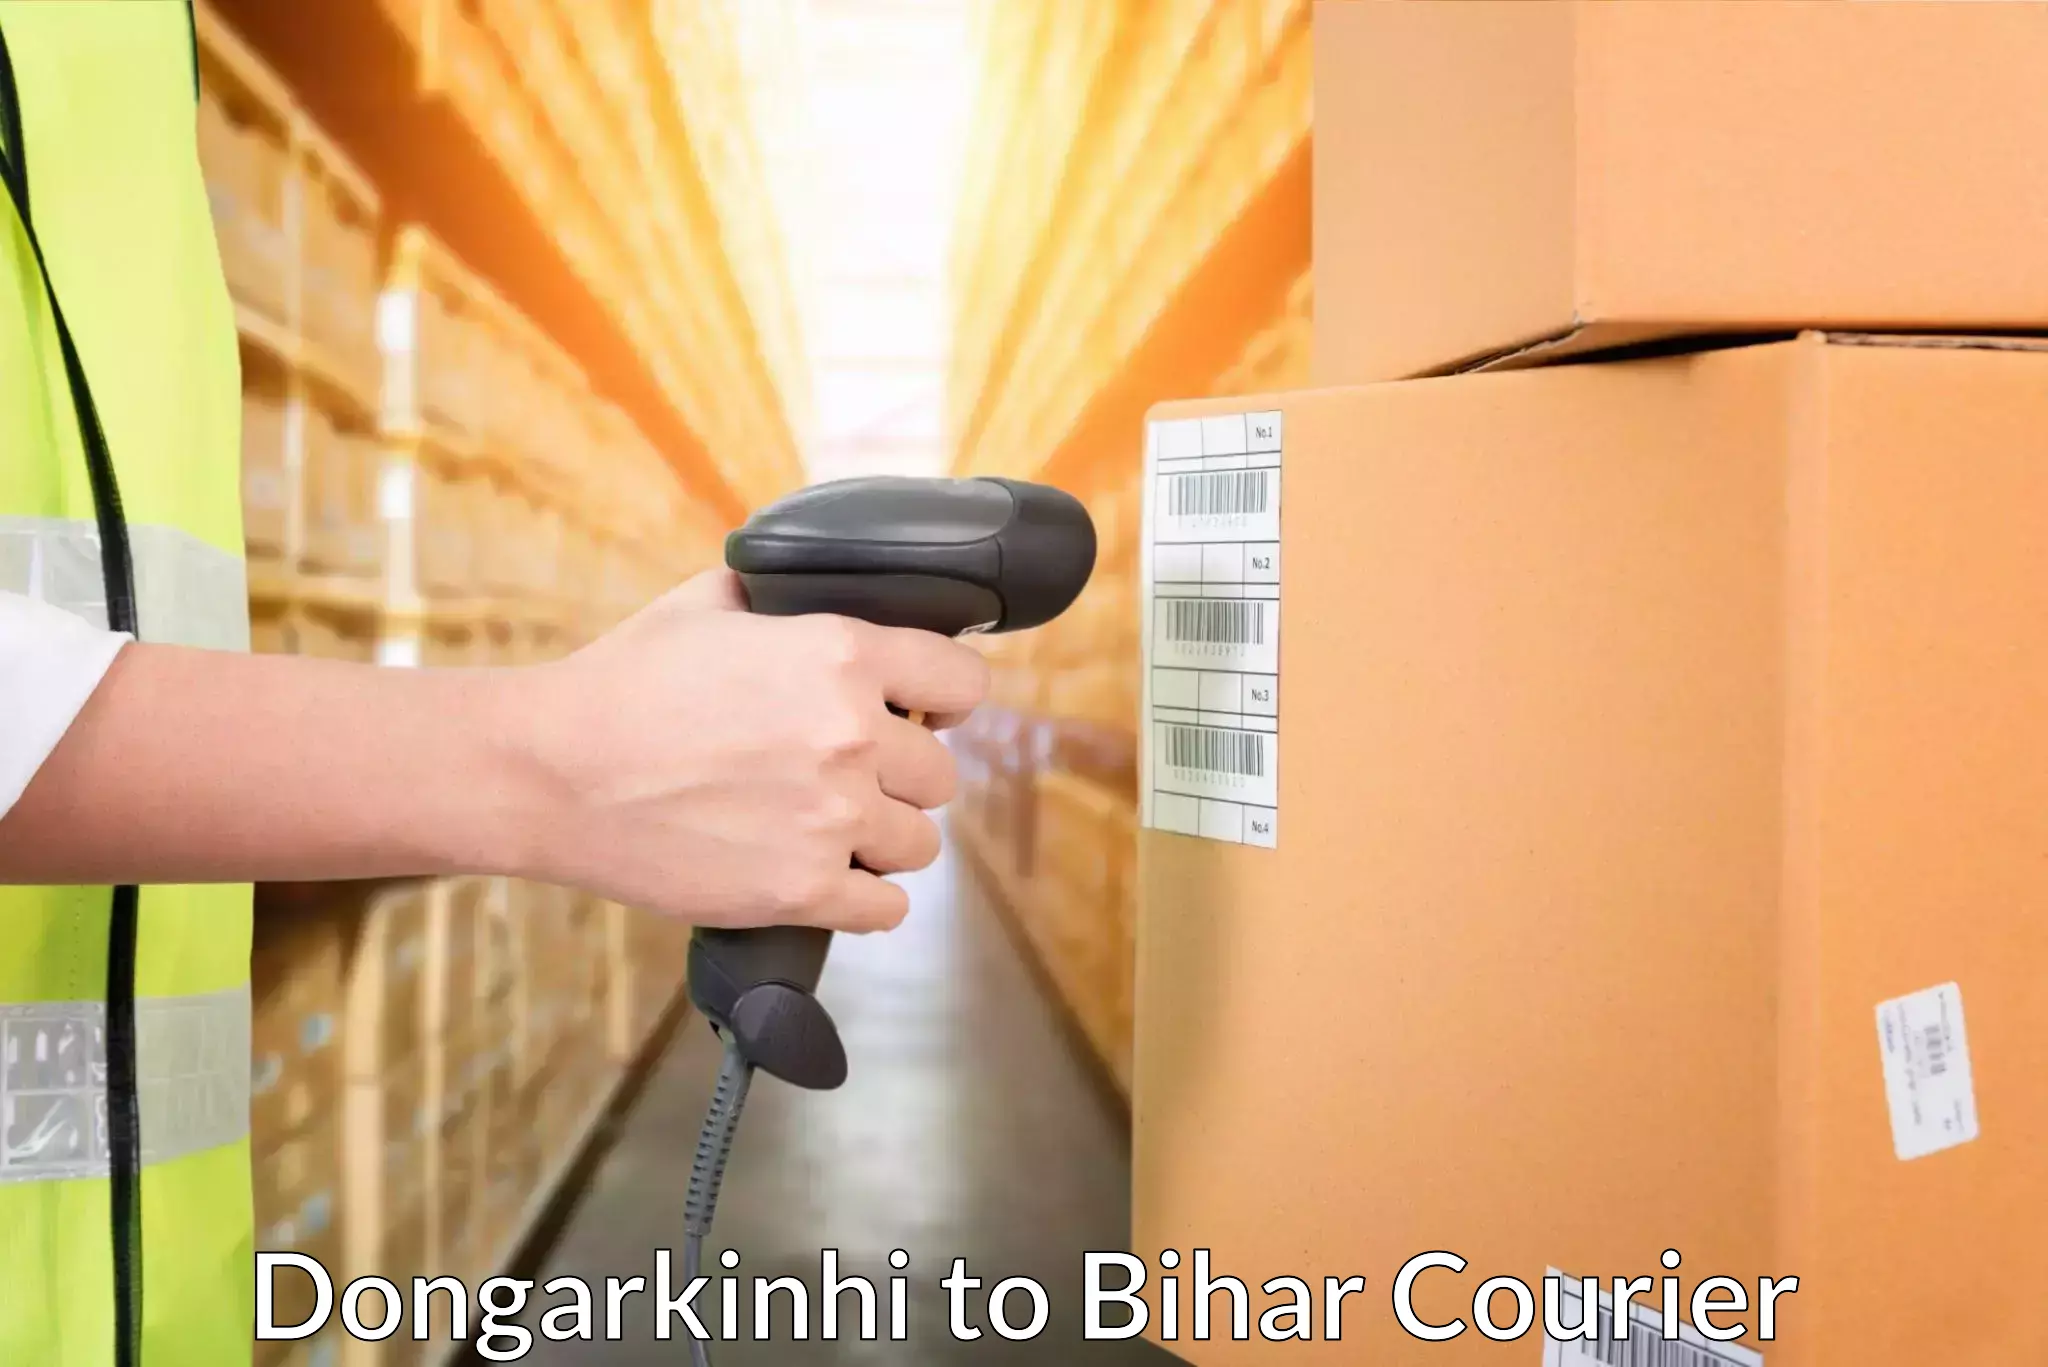 On-demand courier Dongarkinhi to Dholi Moraul